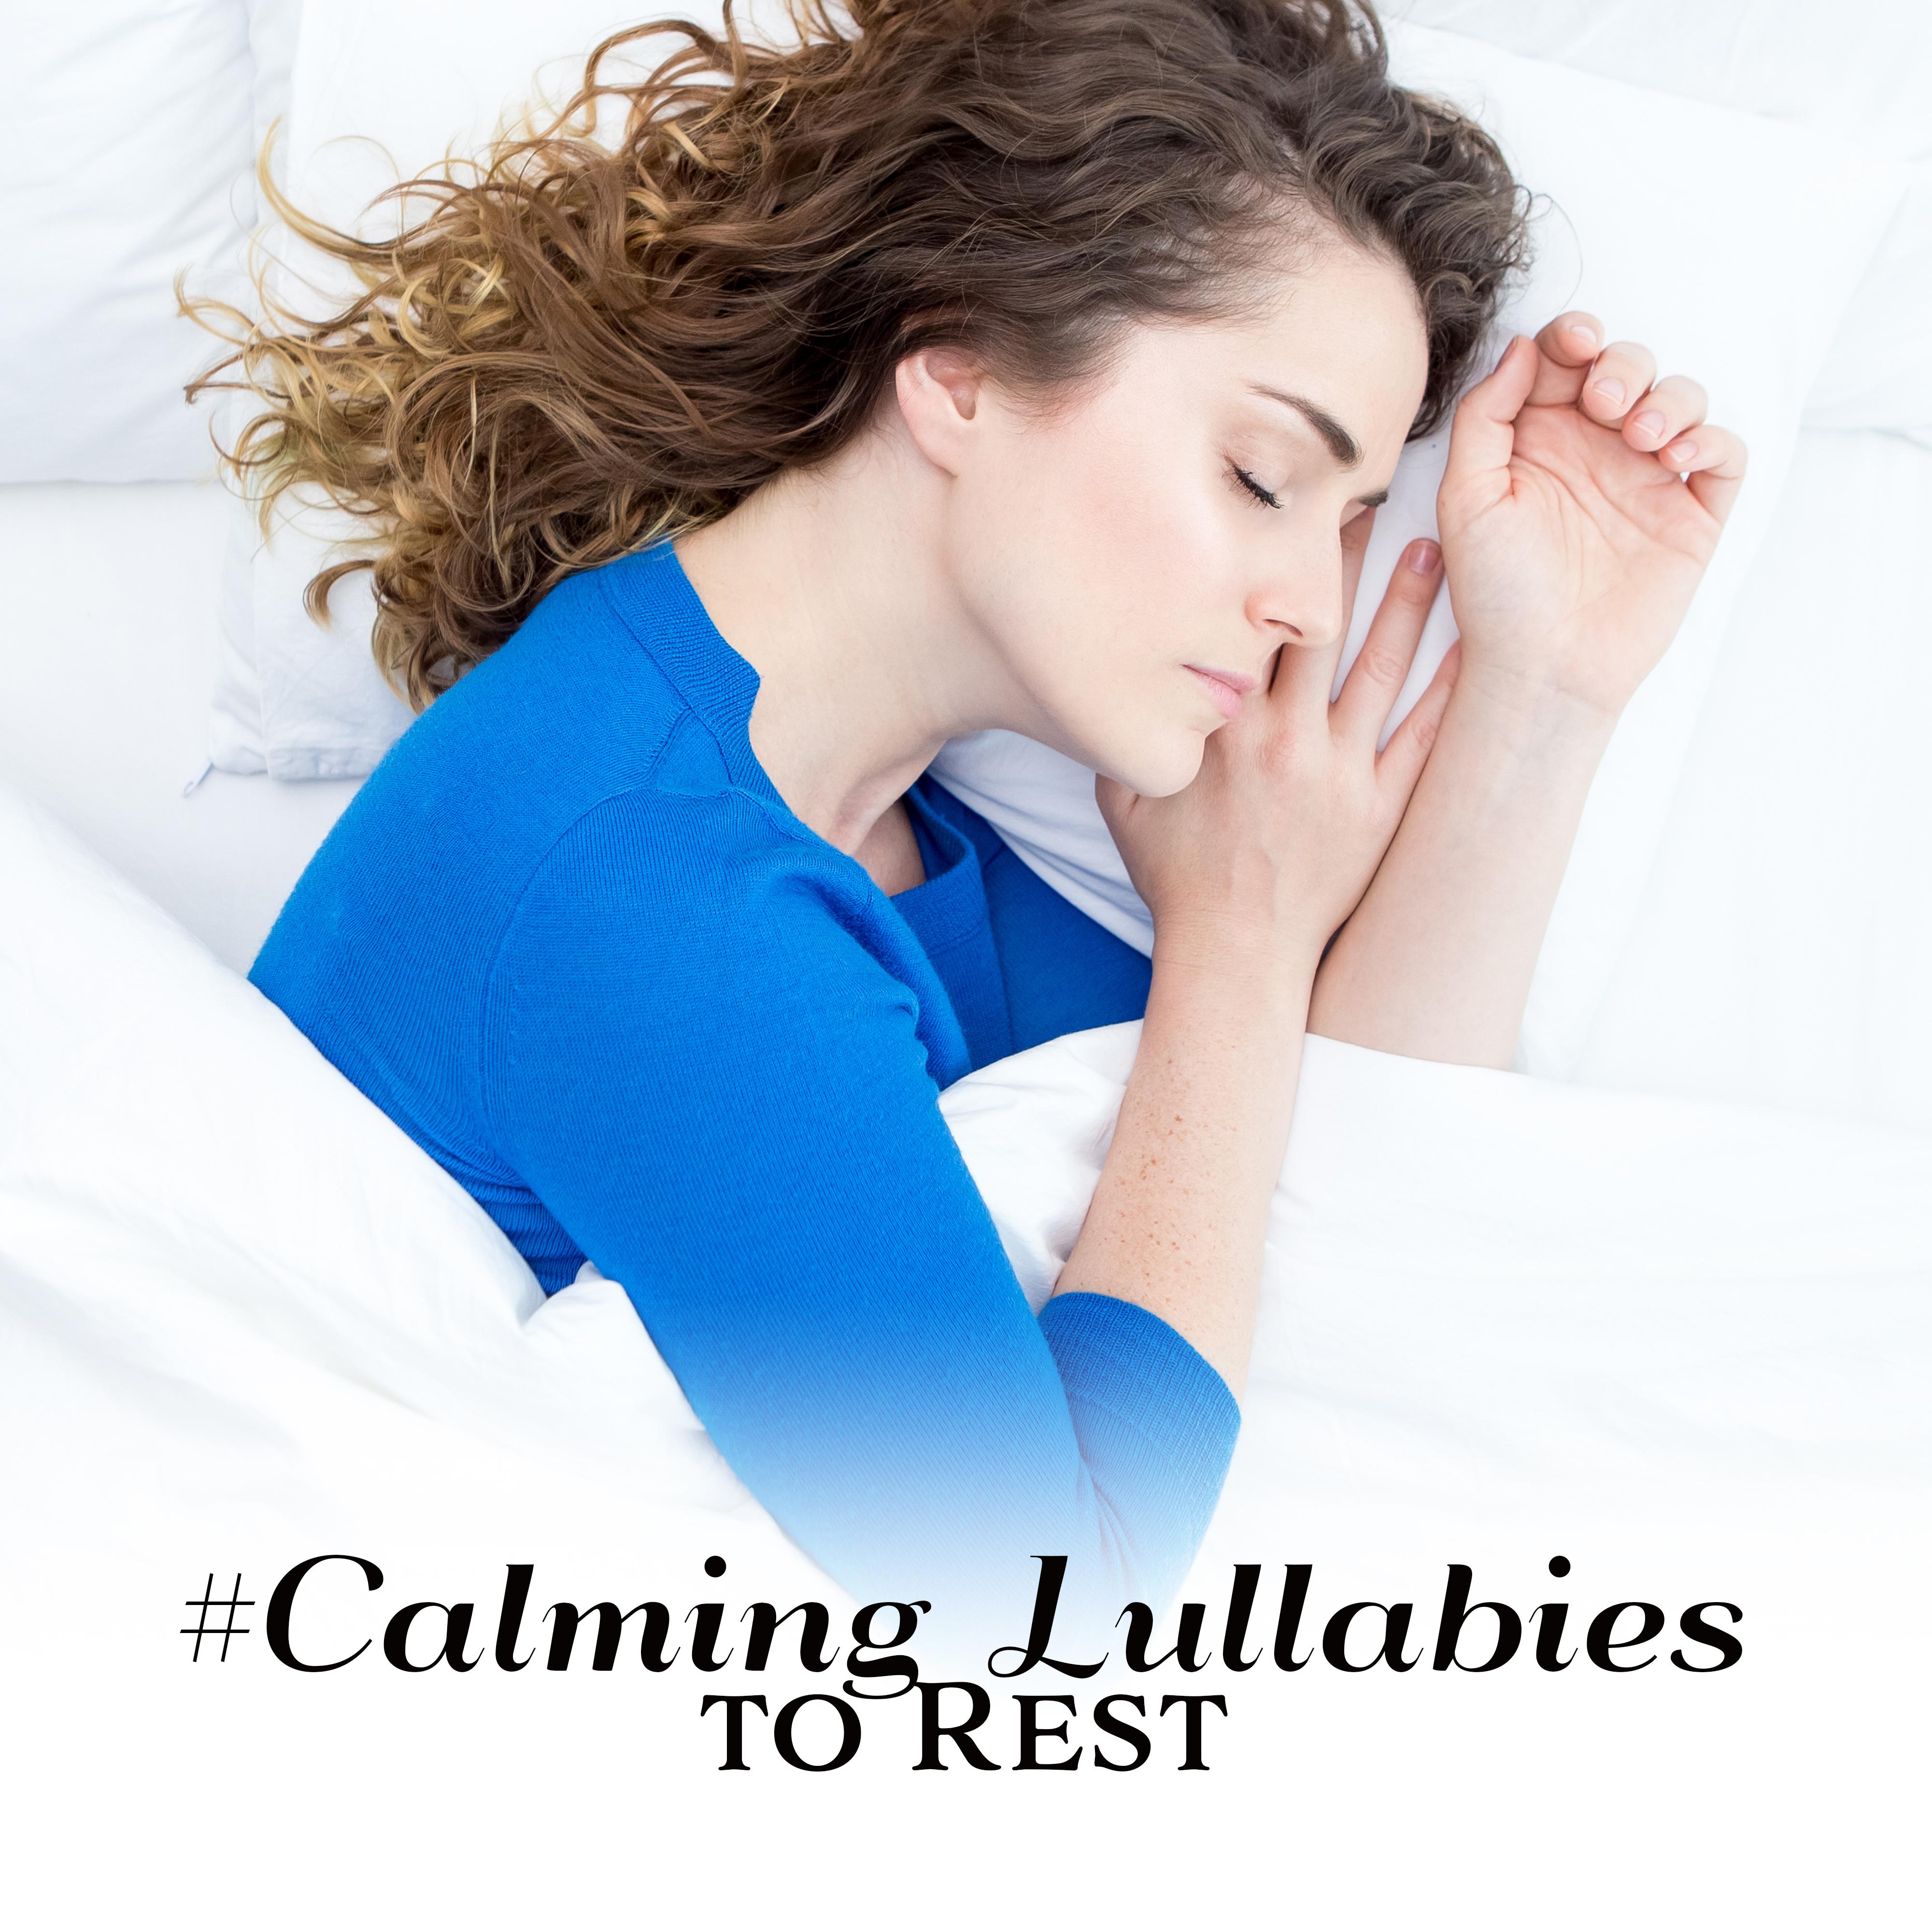 #Calming Lullabies to Rest